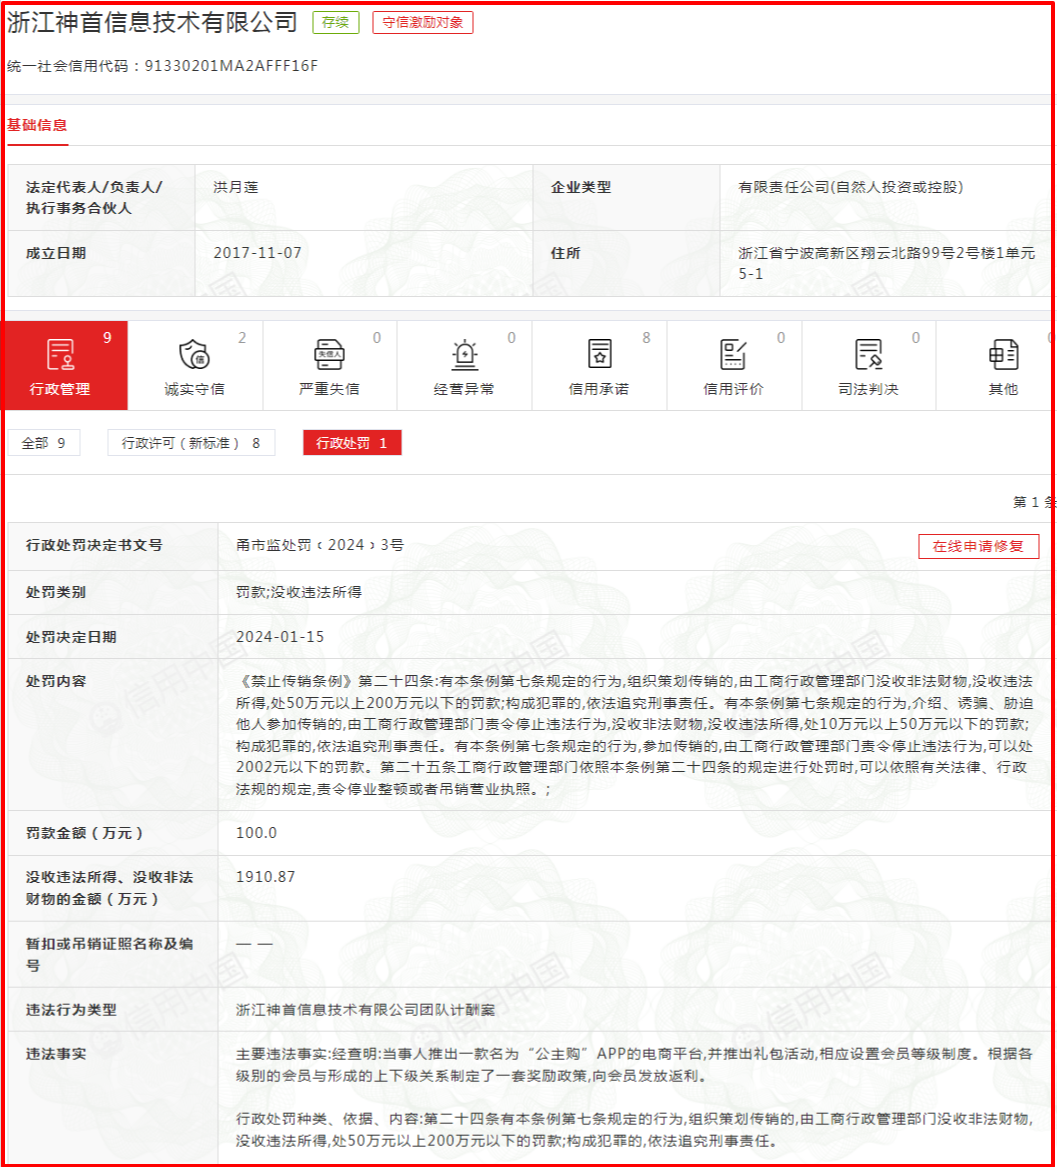 浙江神首信息技术有限公司运营的“公主购”app涉嫌传销，被罚没2010.87万元